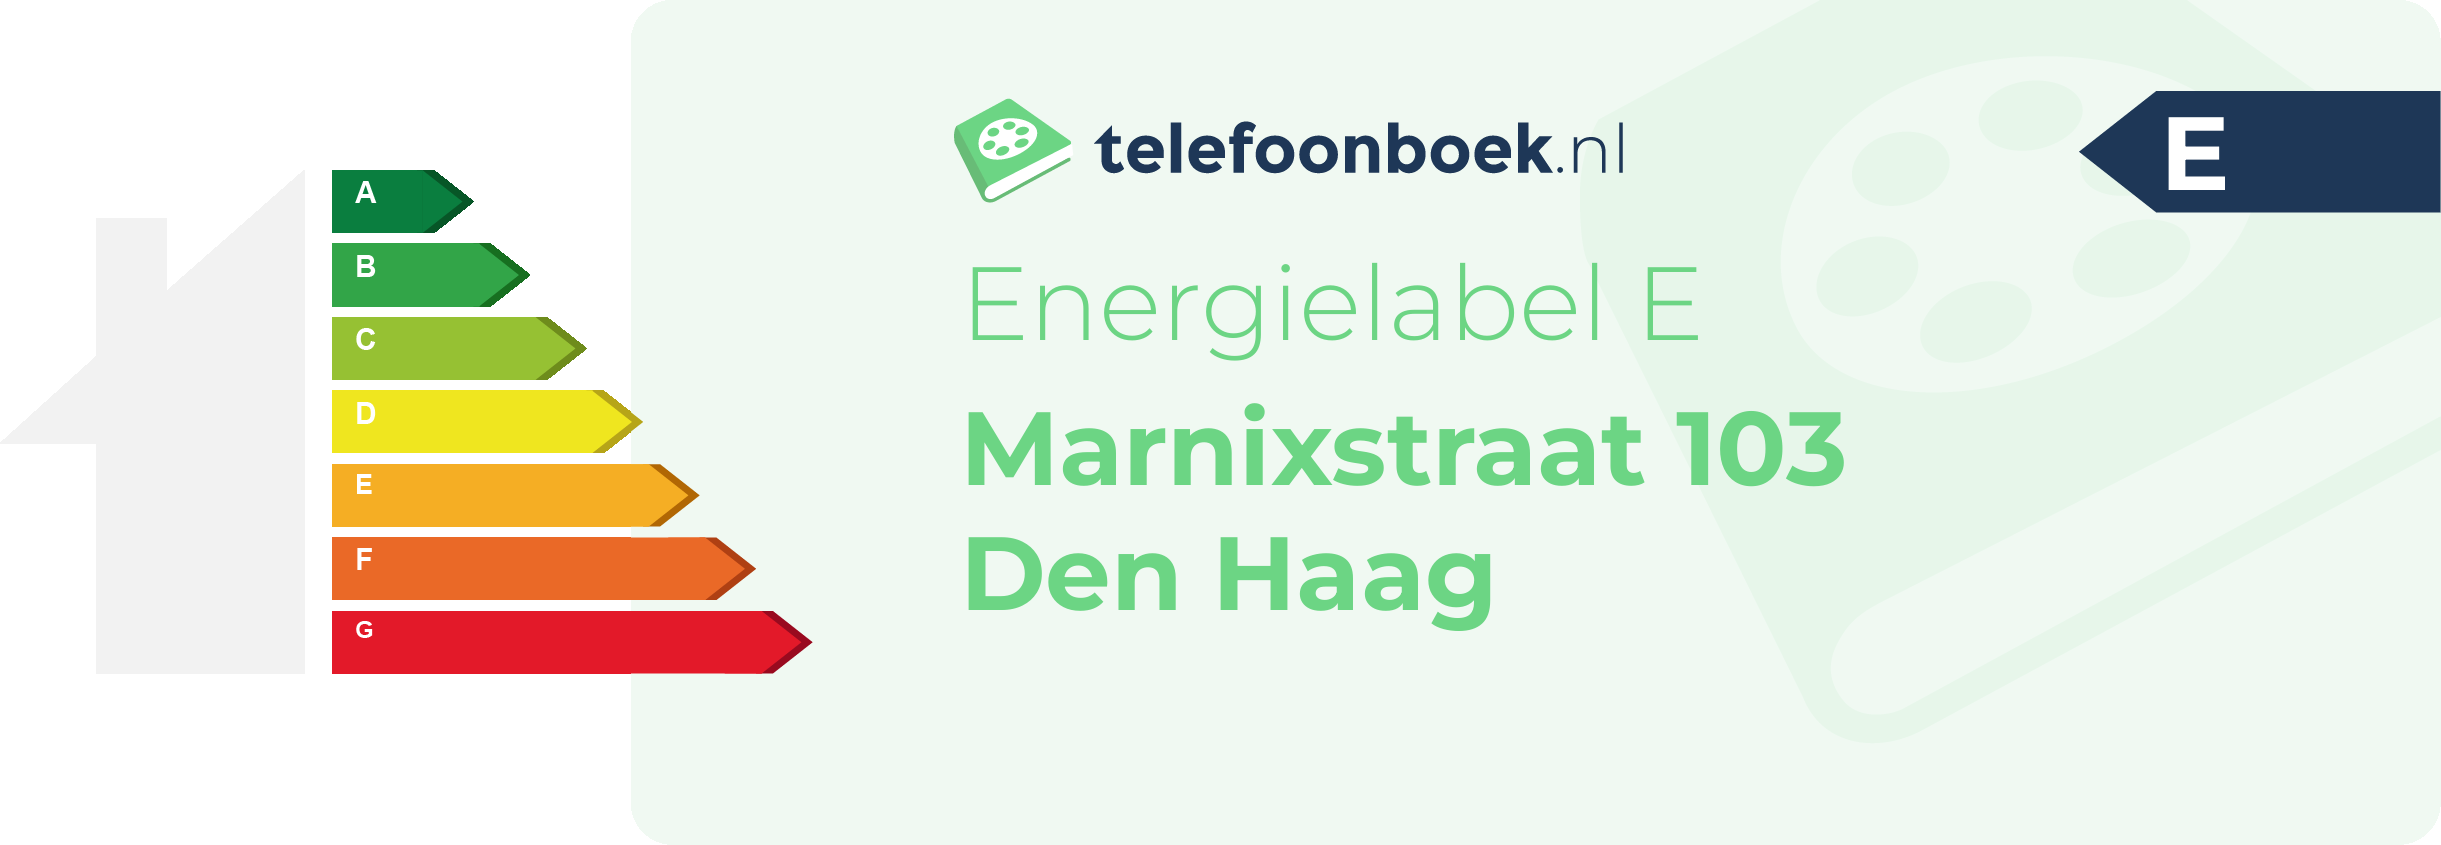 Energielabel Marnixstraat 103 Den Haag